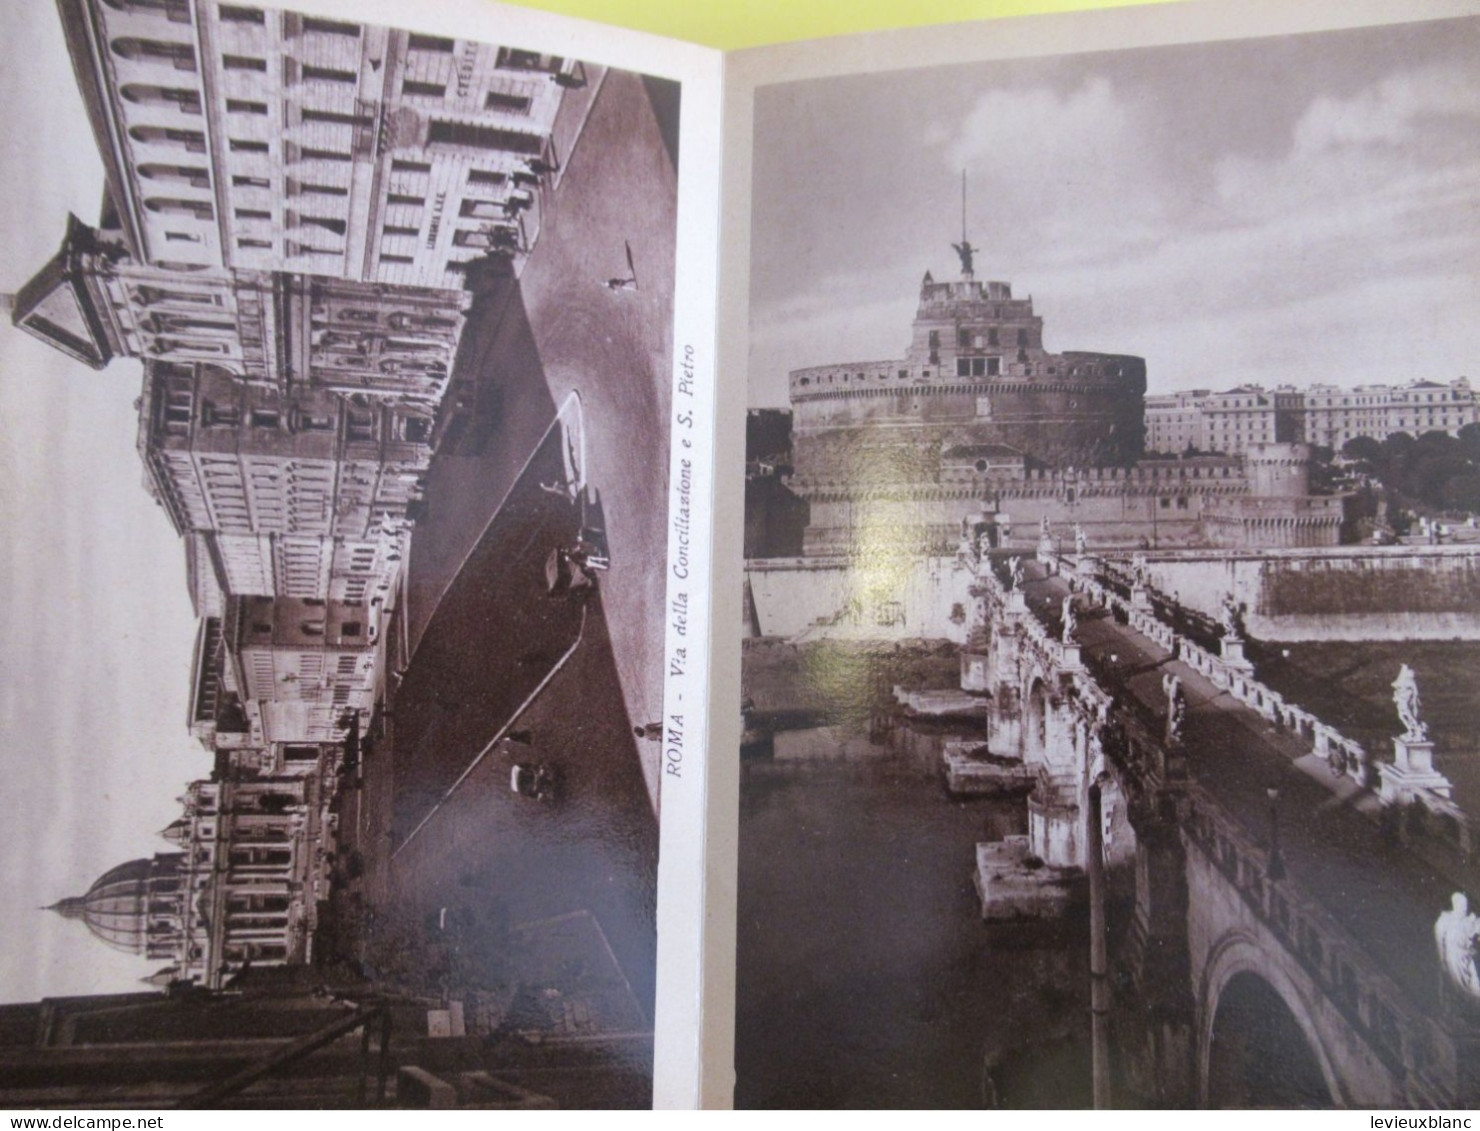 Ricordo di ROMA/Parte I /Livret souvenir de Rome/avec 29 vues photographiques Héliogravures/ Vers1910-1920     PGC543